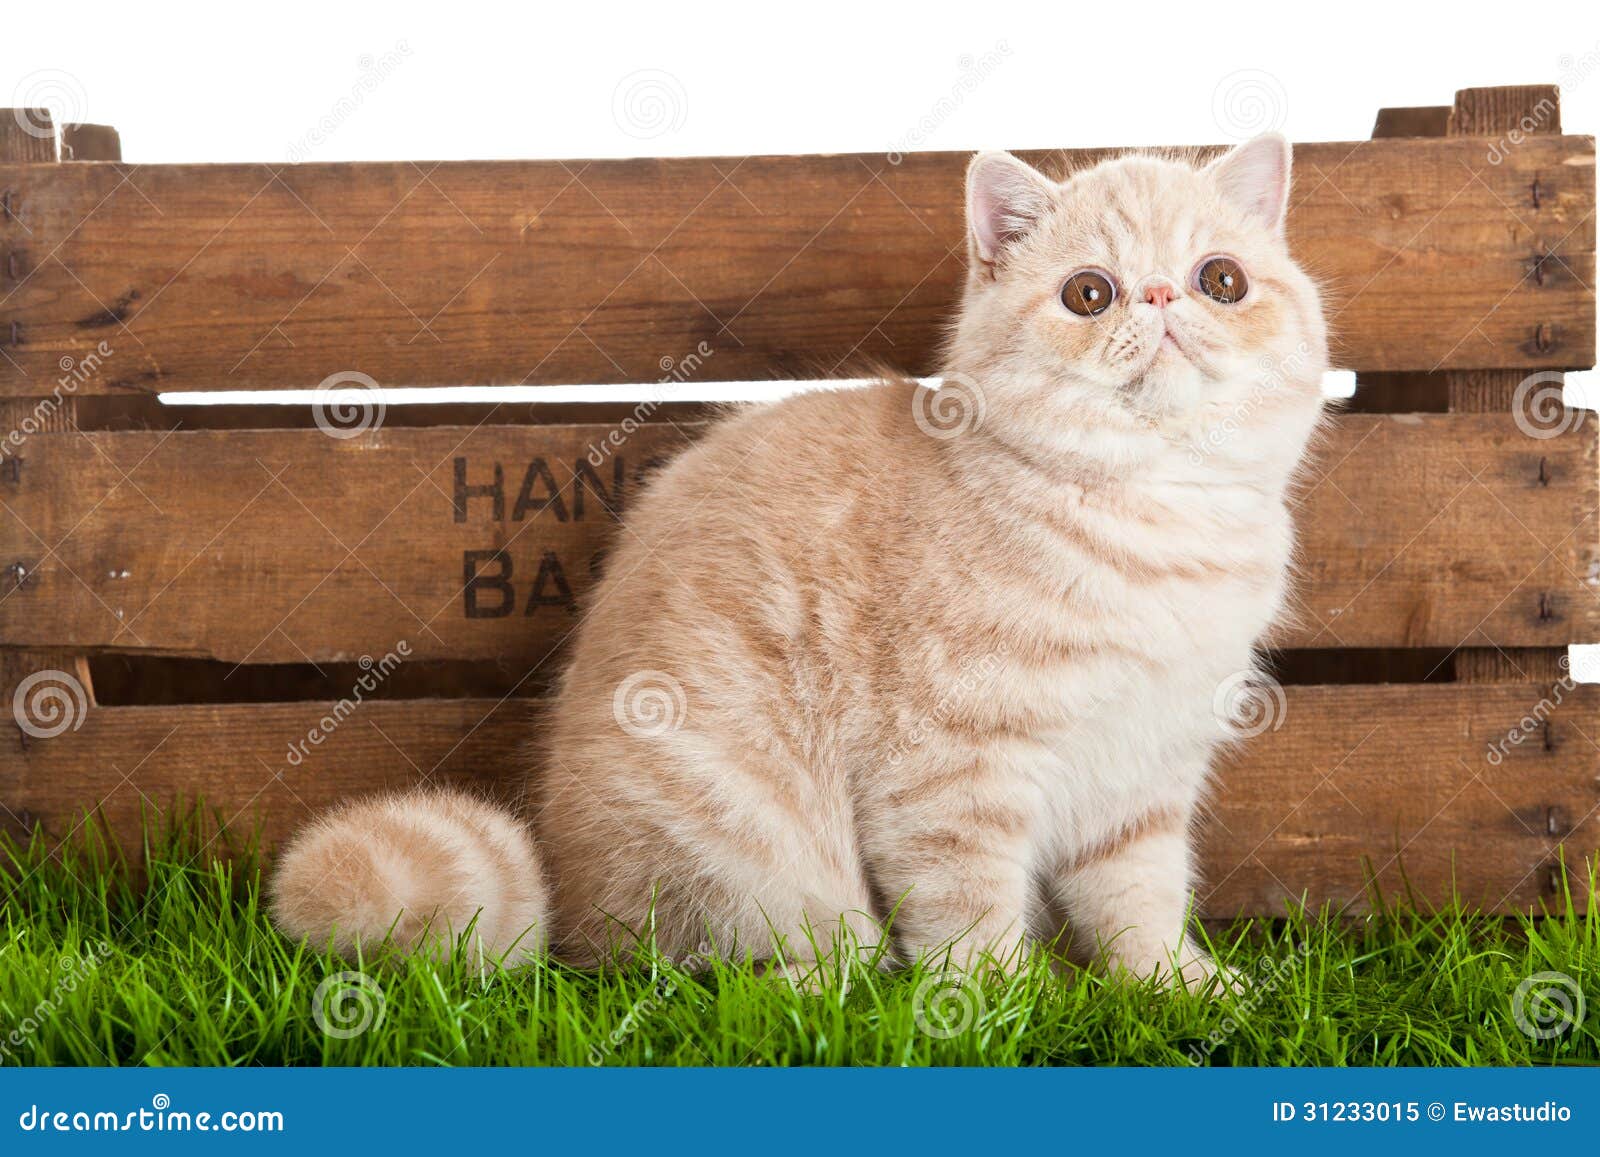 exotic shorthair cat. beautiful cat in a box.